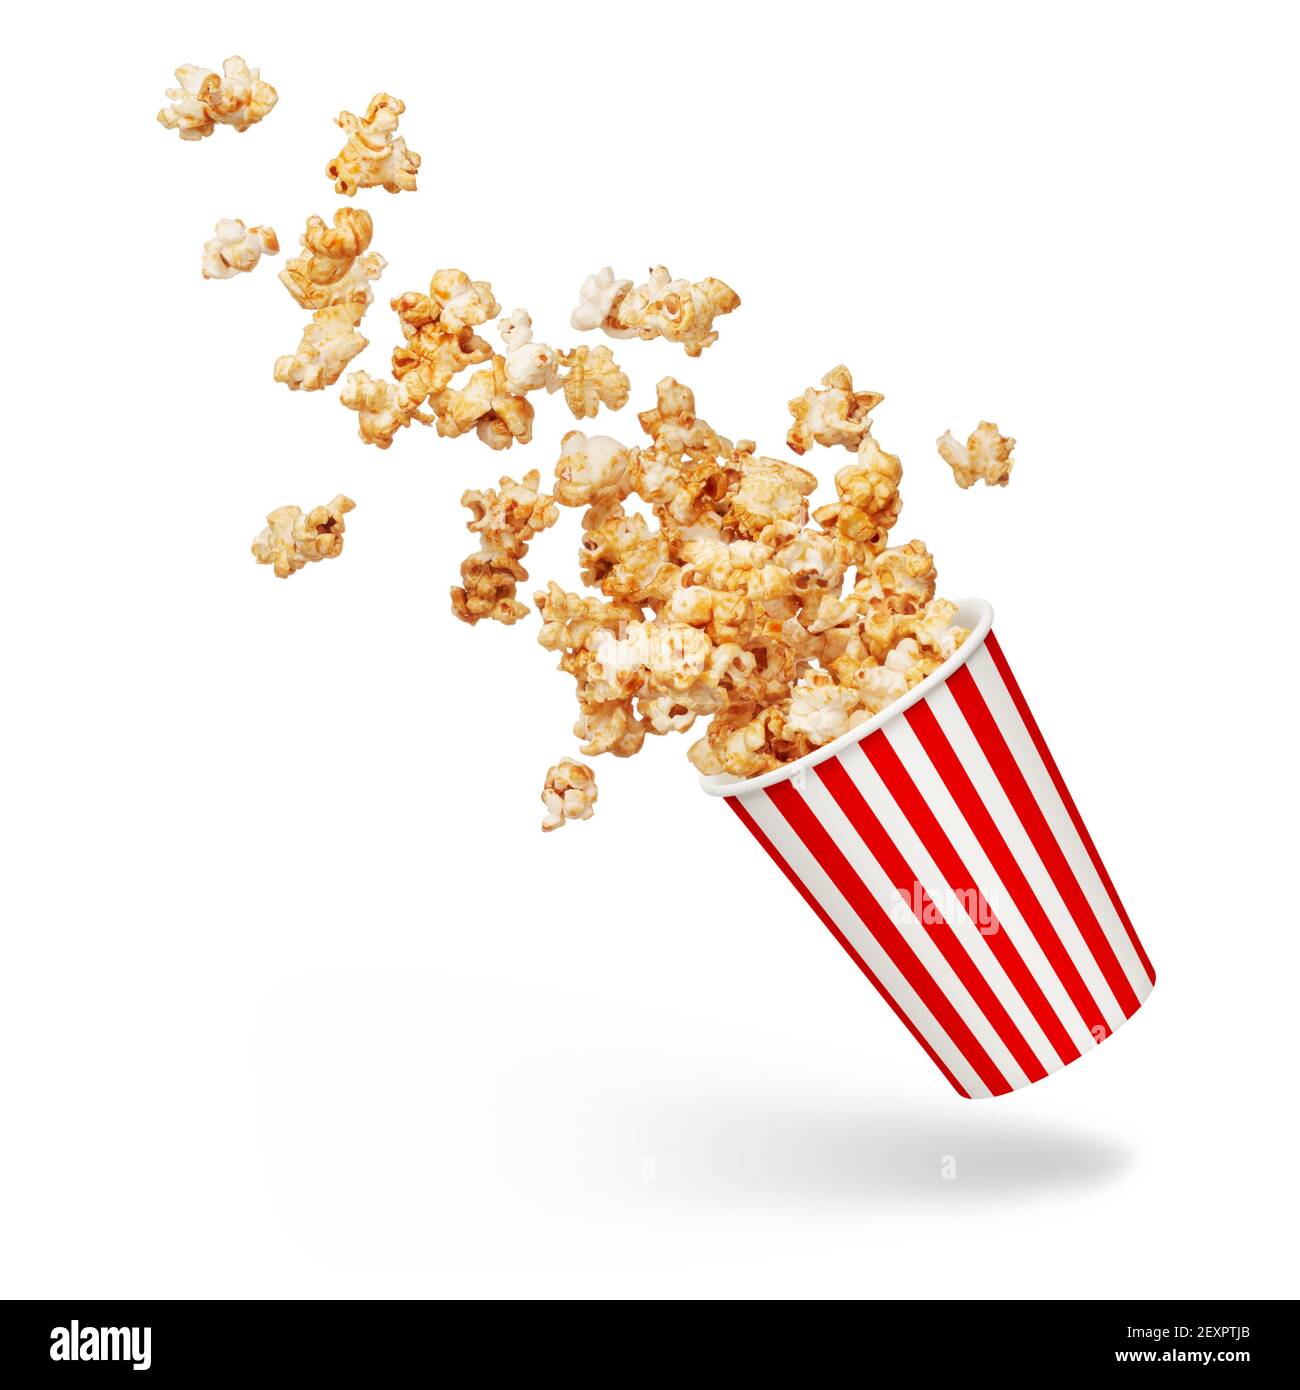 bucket of popcorn splashing isolated on white Stock Photo